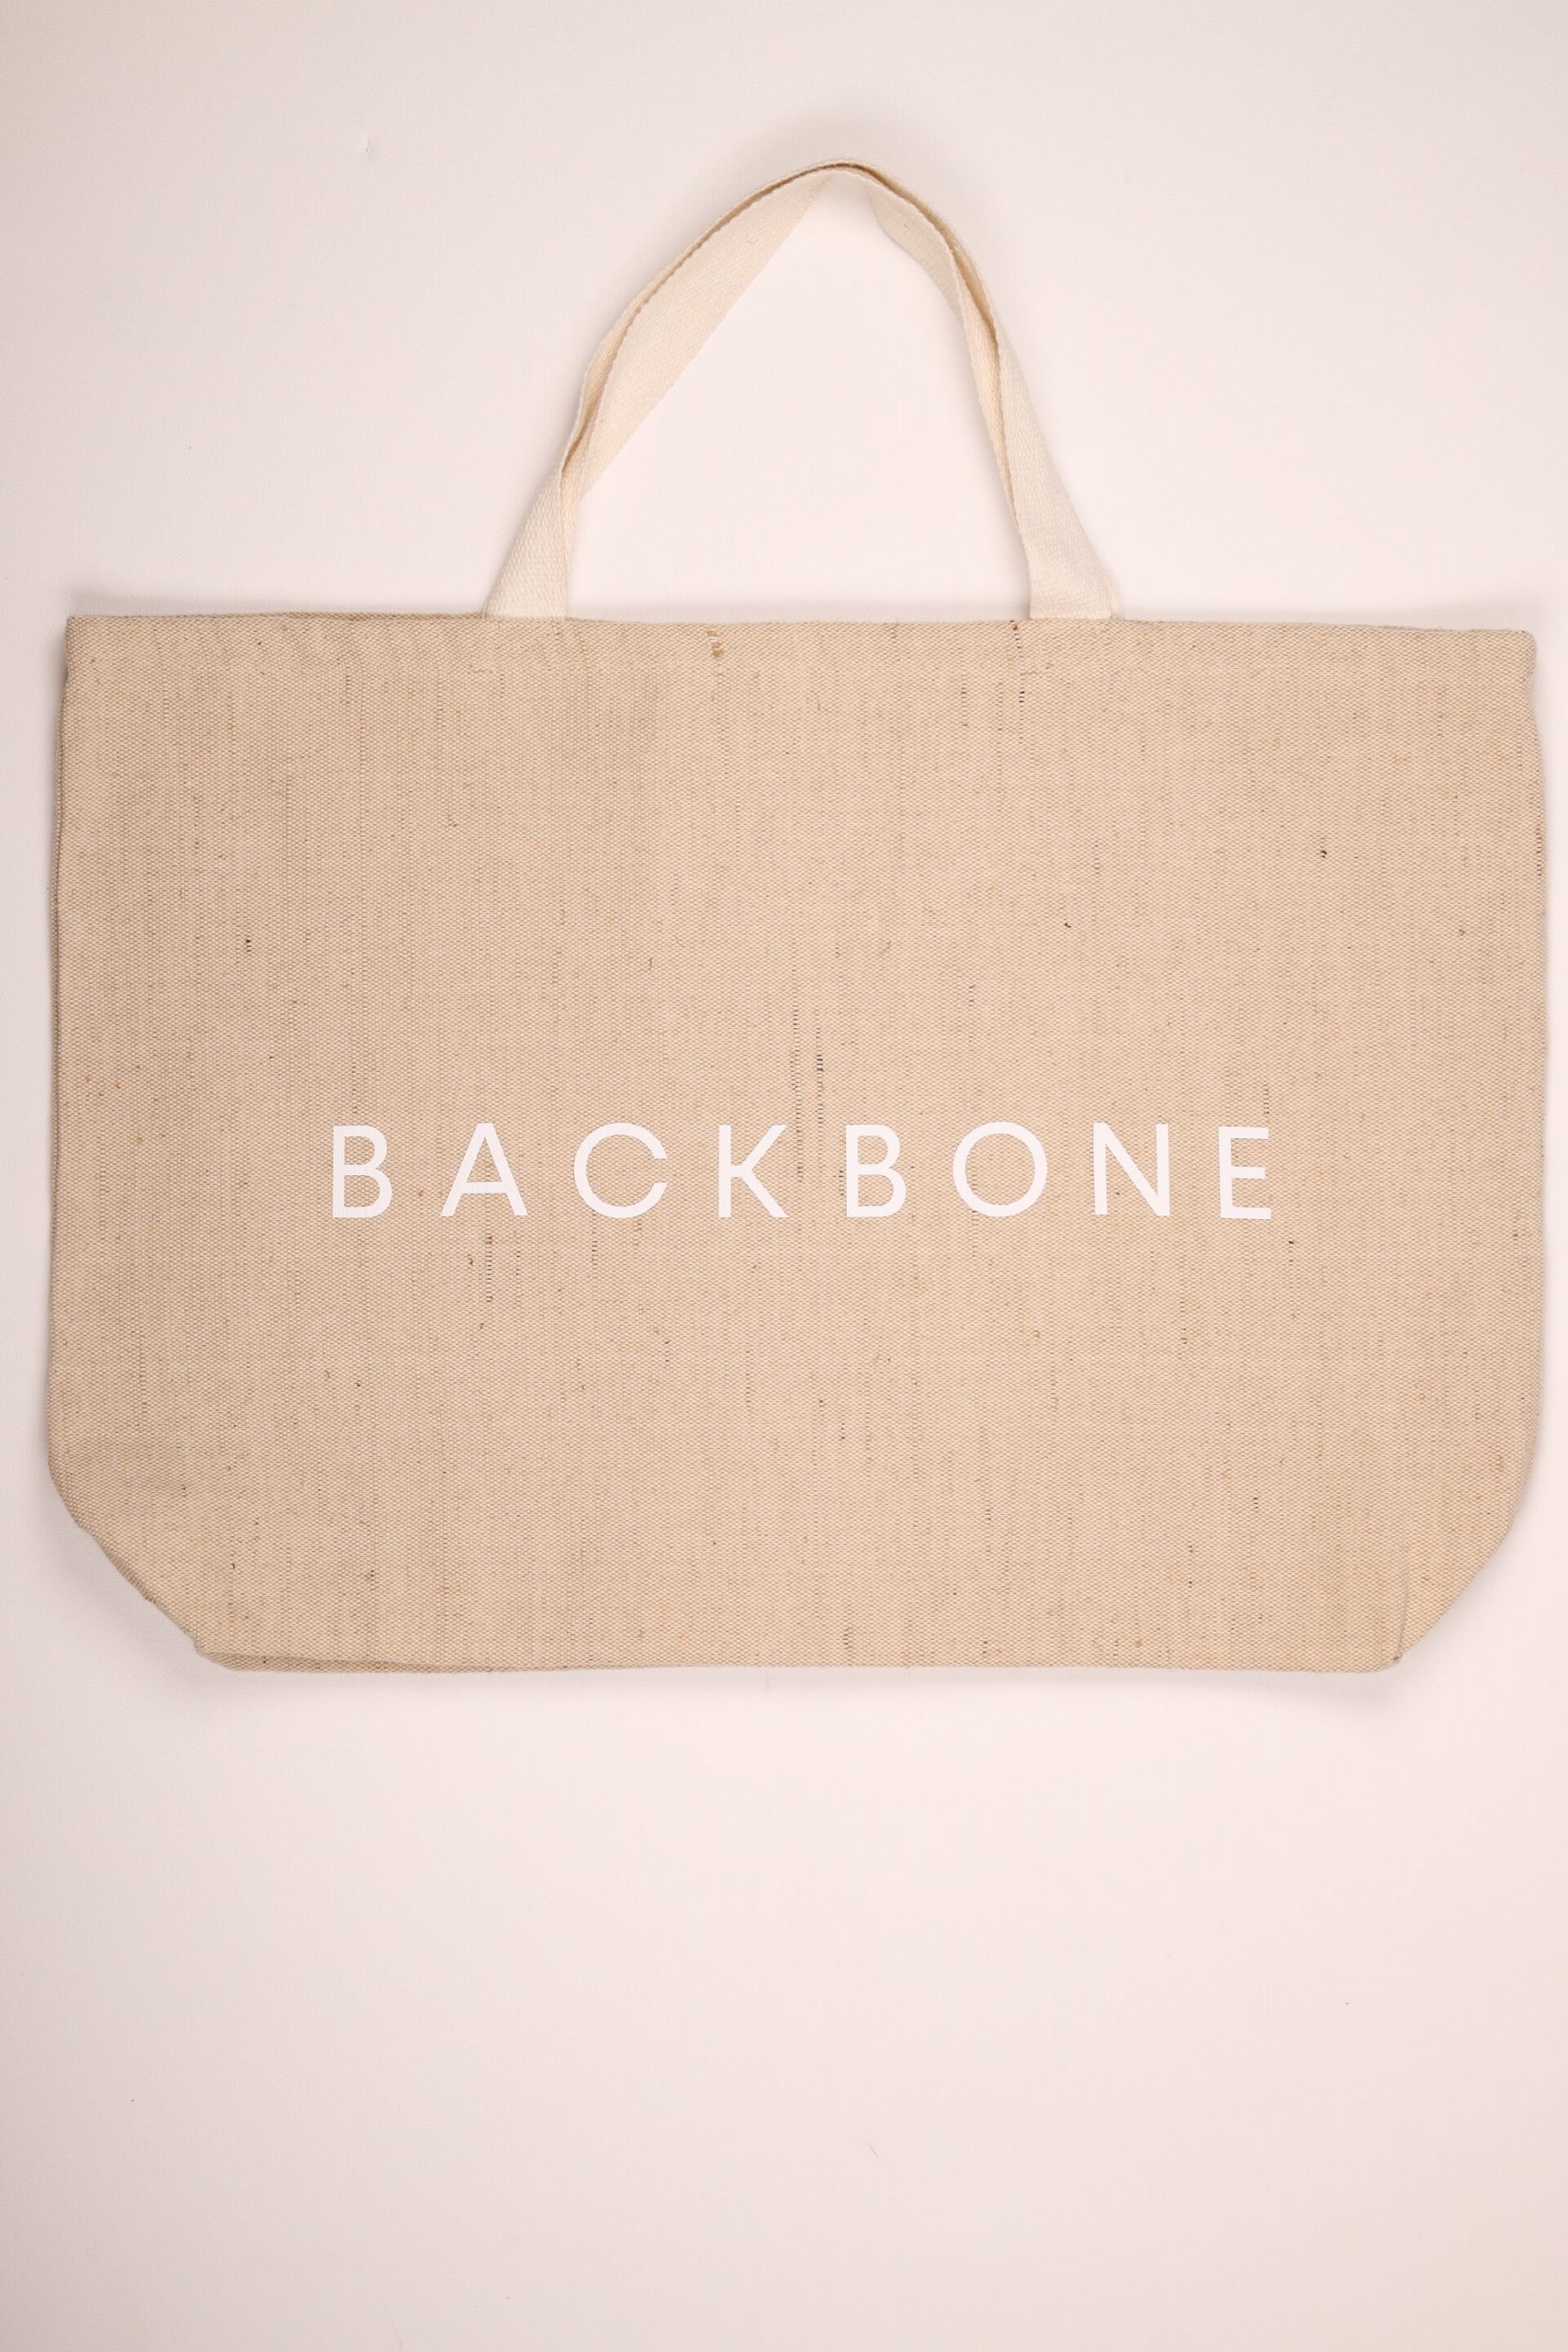 Backbone Beachbag